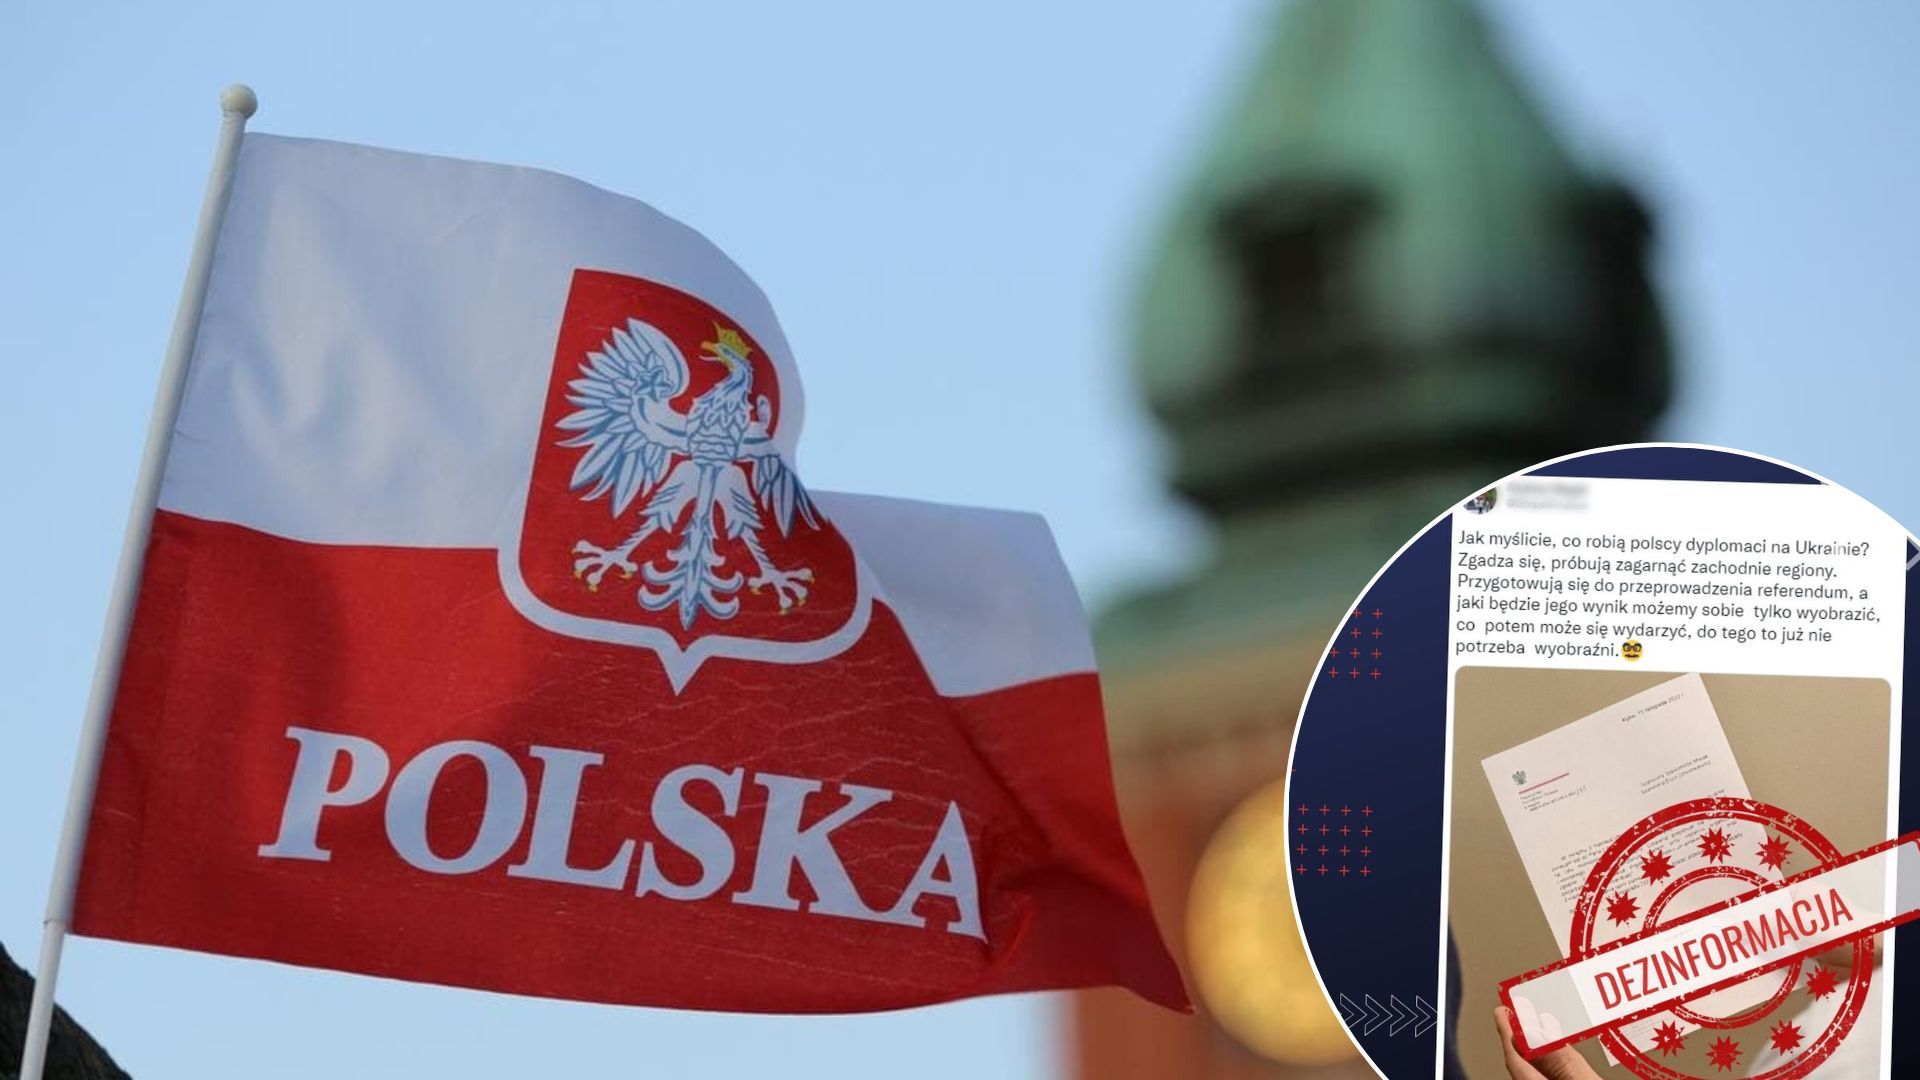 Польща приєднання Західної України - що відомо про фейк росіян